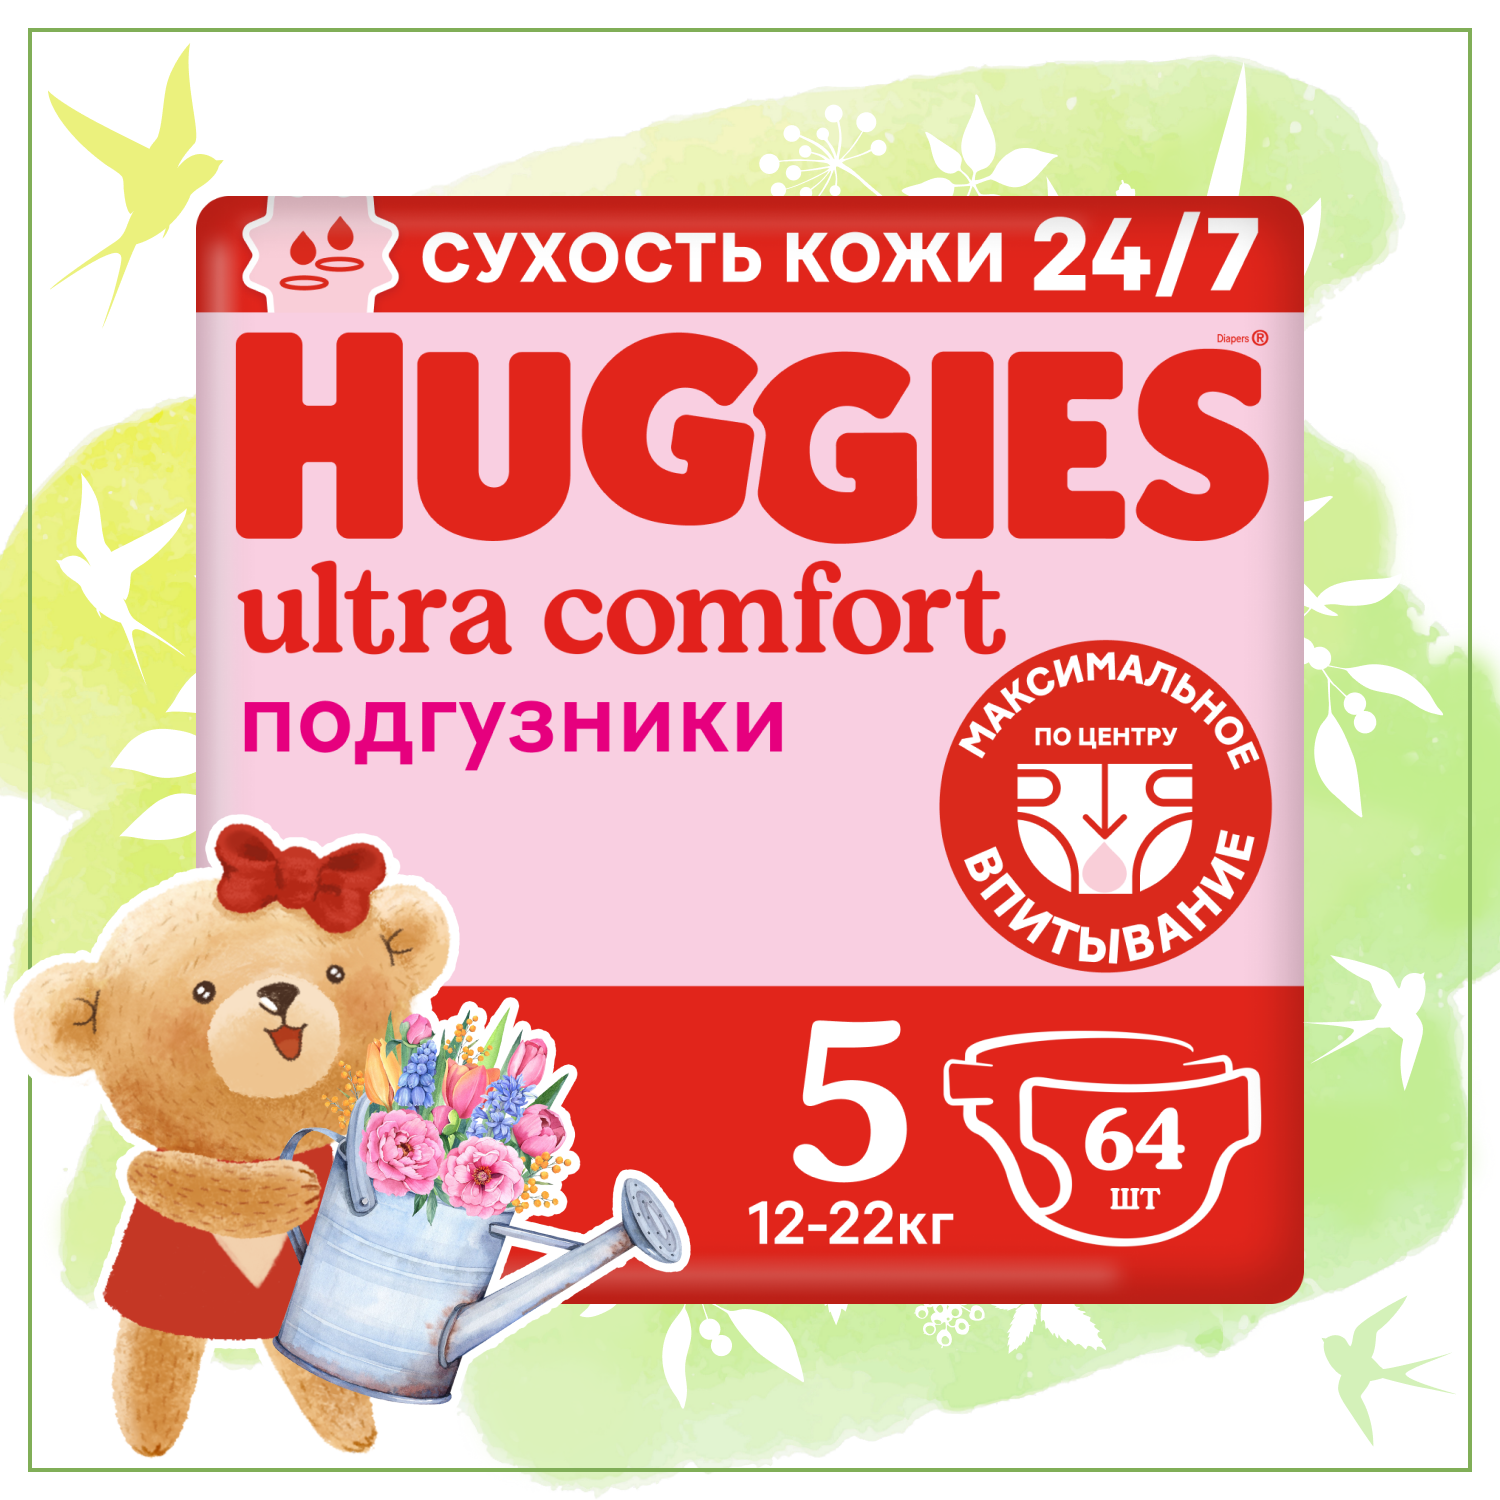 Подгузники Huggies Ultra Comfort для девочек 12-22кг, 5 размер, 64шт, 